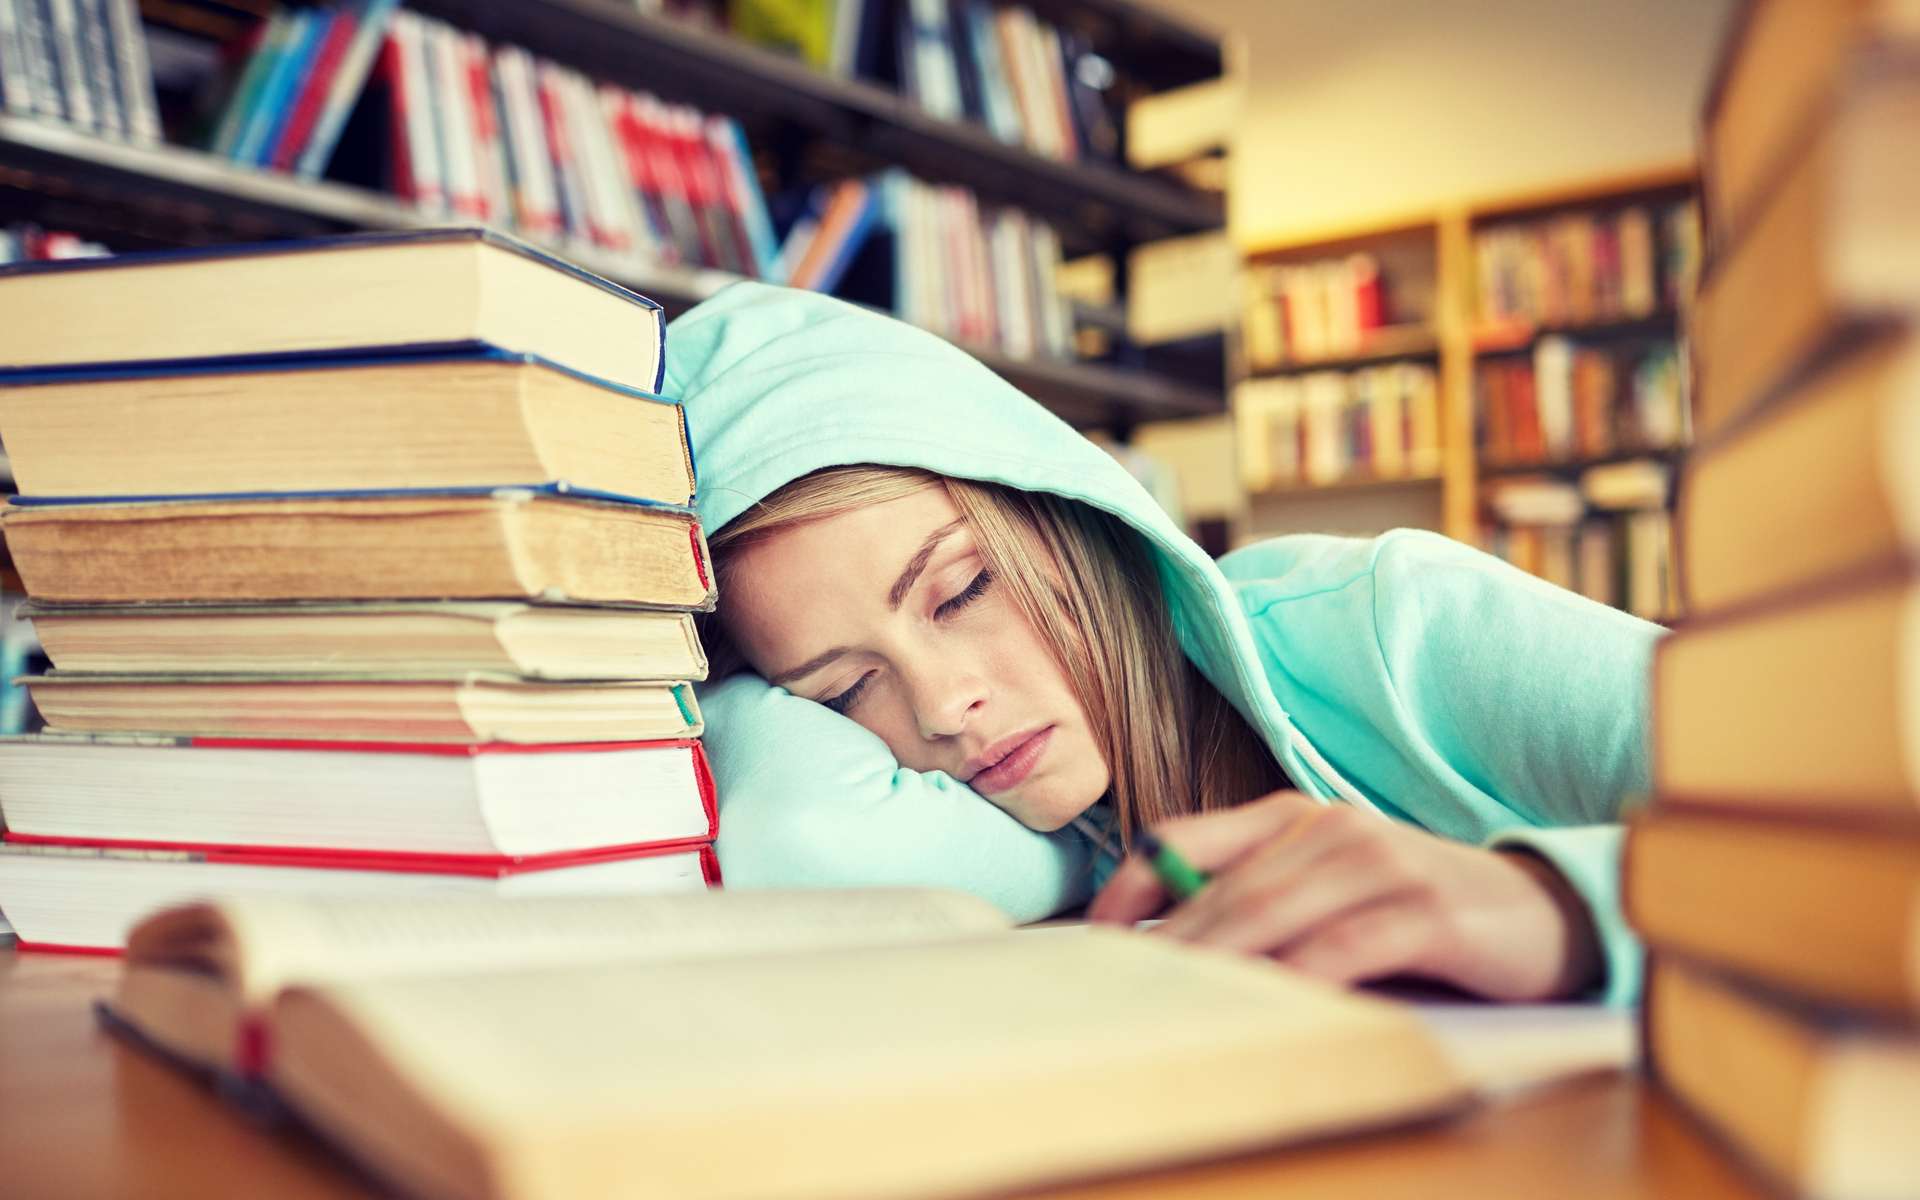 Deux fois plus d'insomnies chez les étudiants qui consomment du cannabis régulièrement